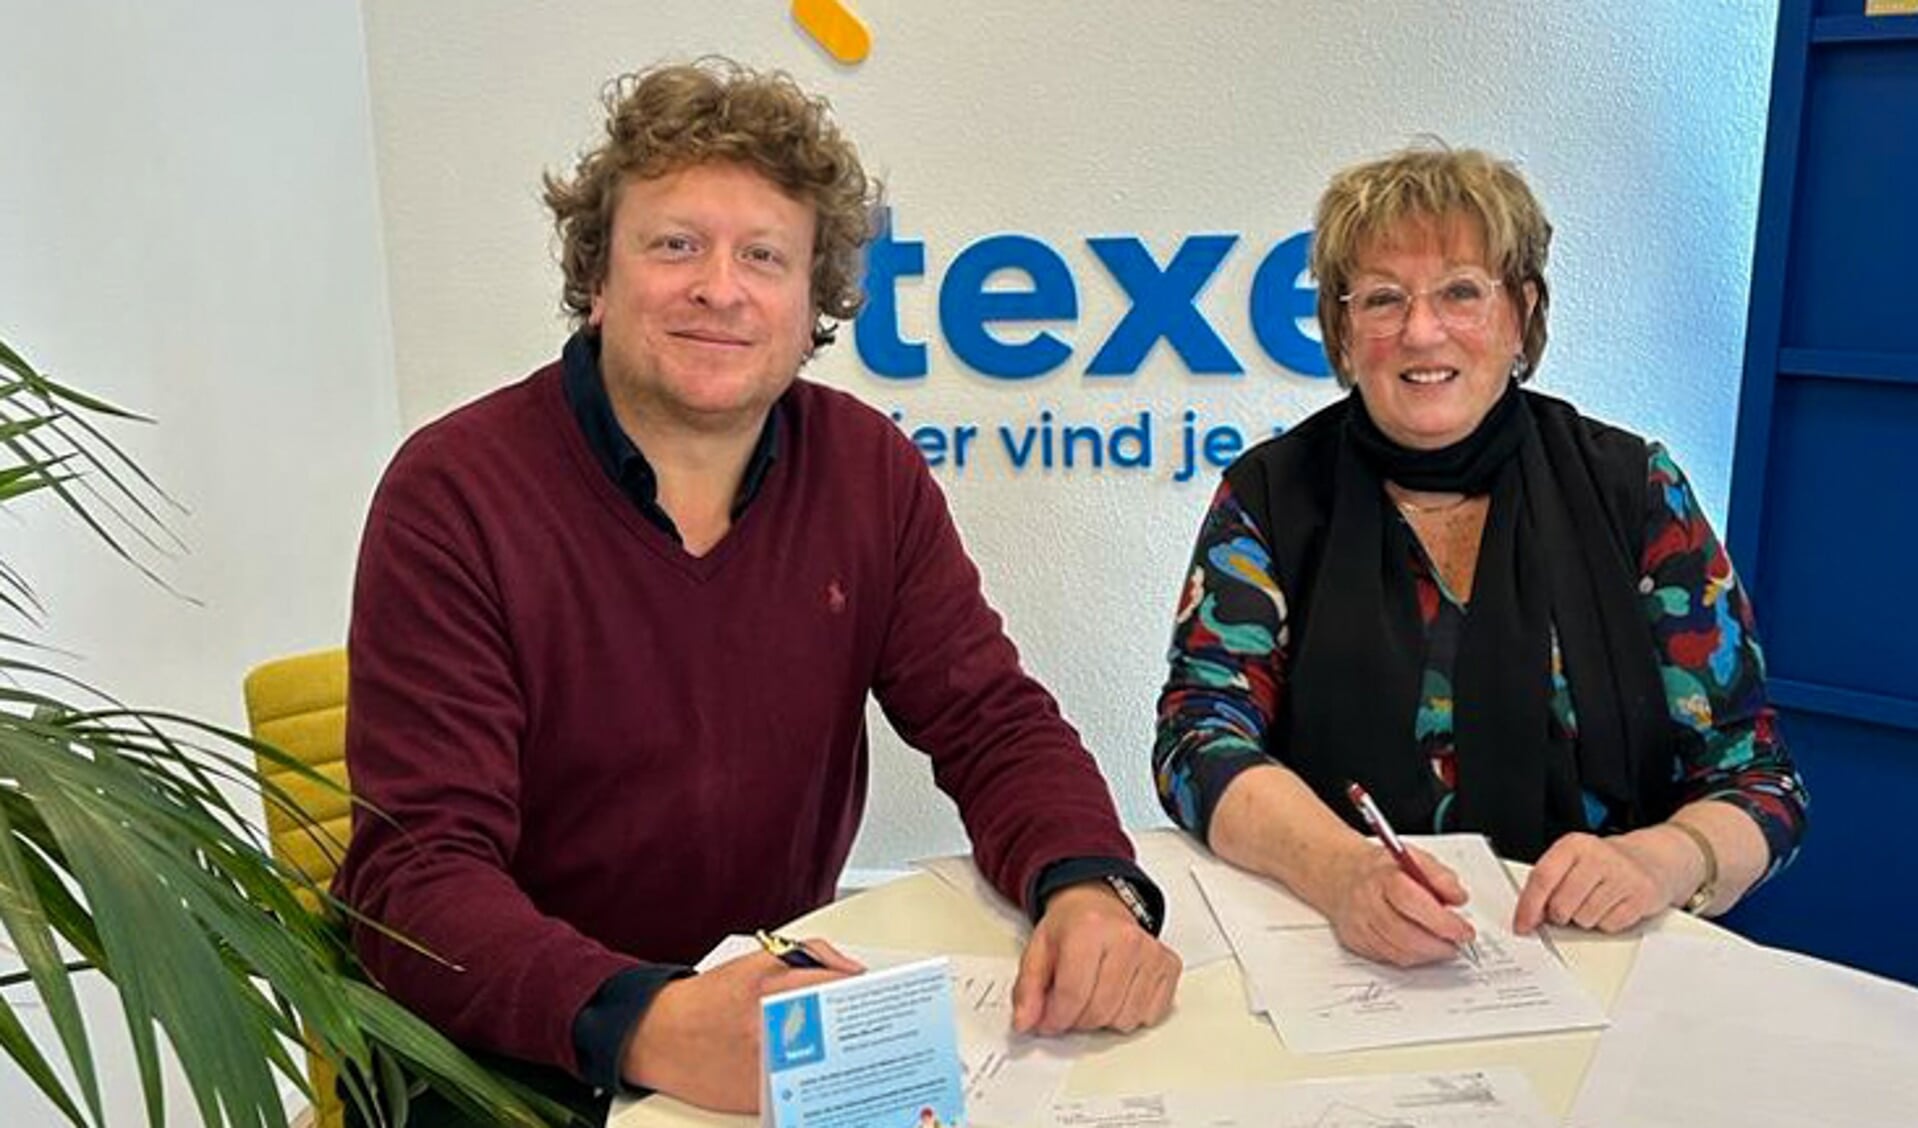 Frank Spooren en Joke de Boer ondertekenen een nieuw contract voor 10 jaar.